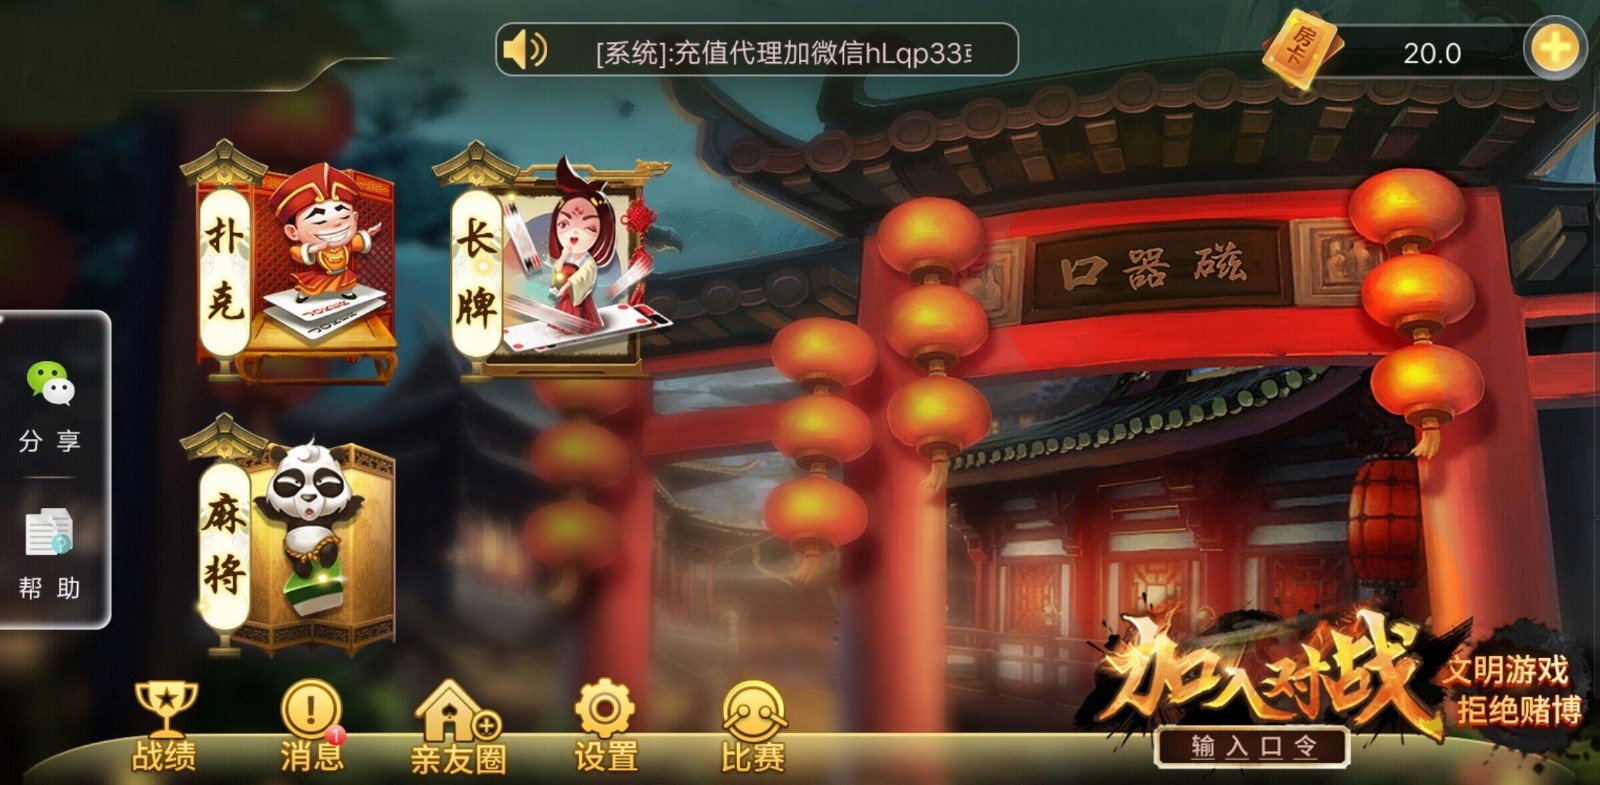 新力捕鱼棋牌送28元iOS1.6.9